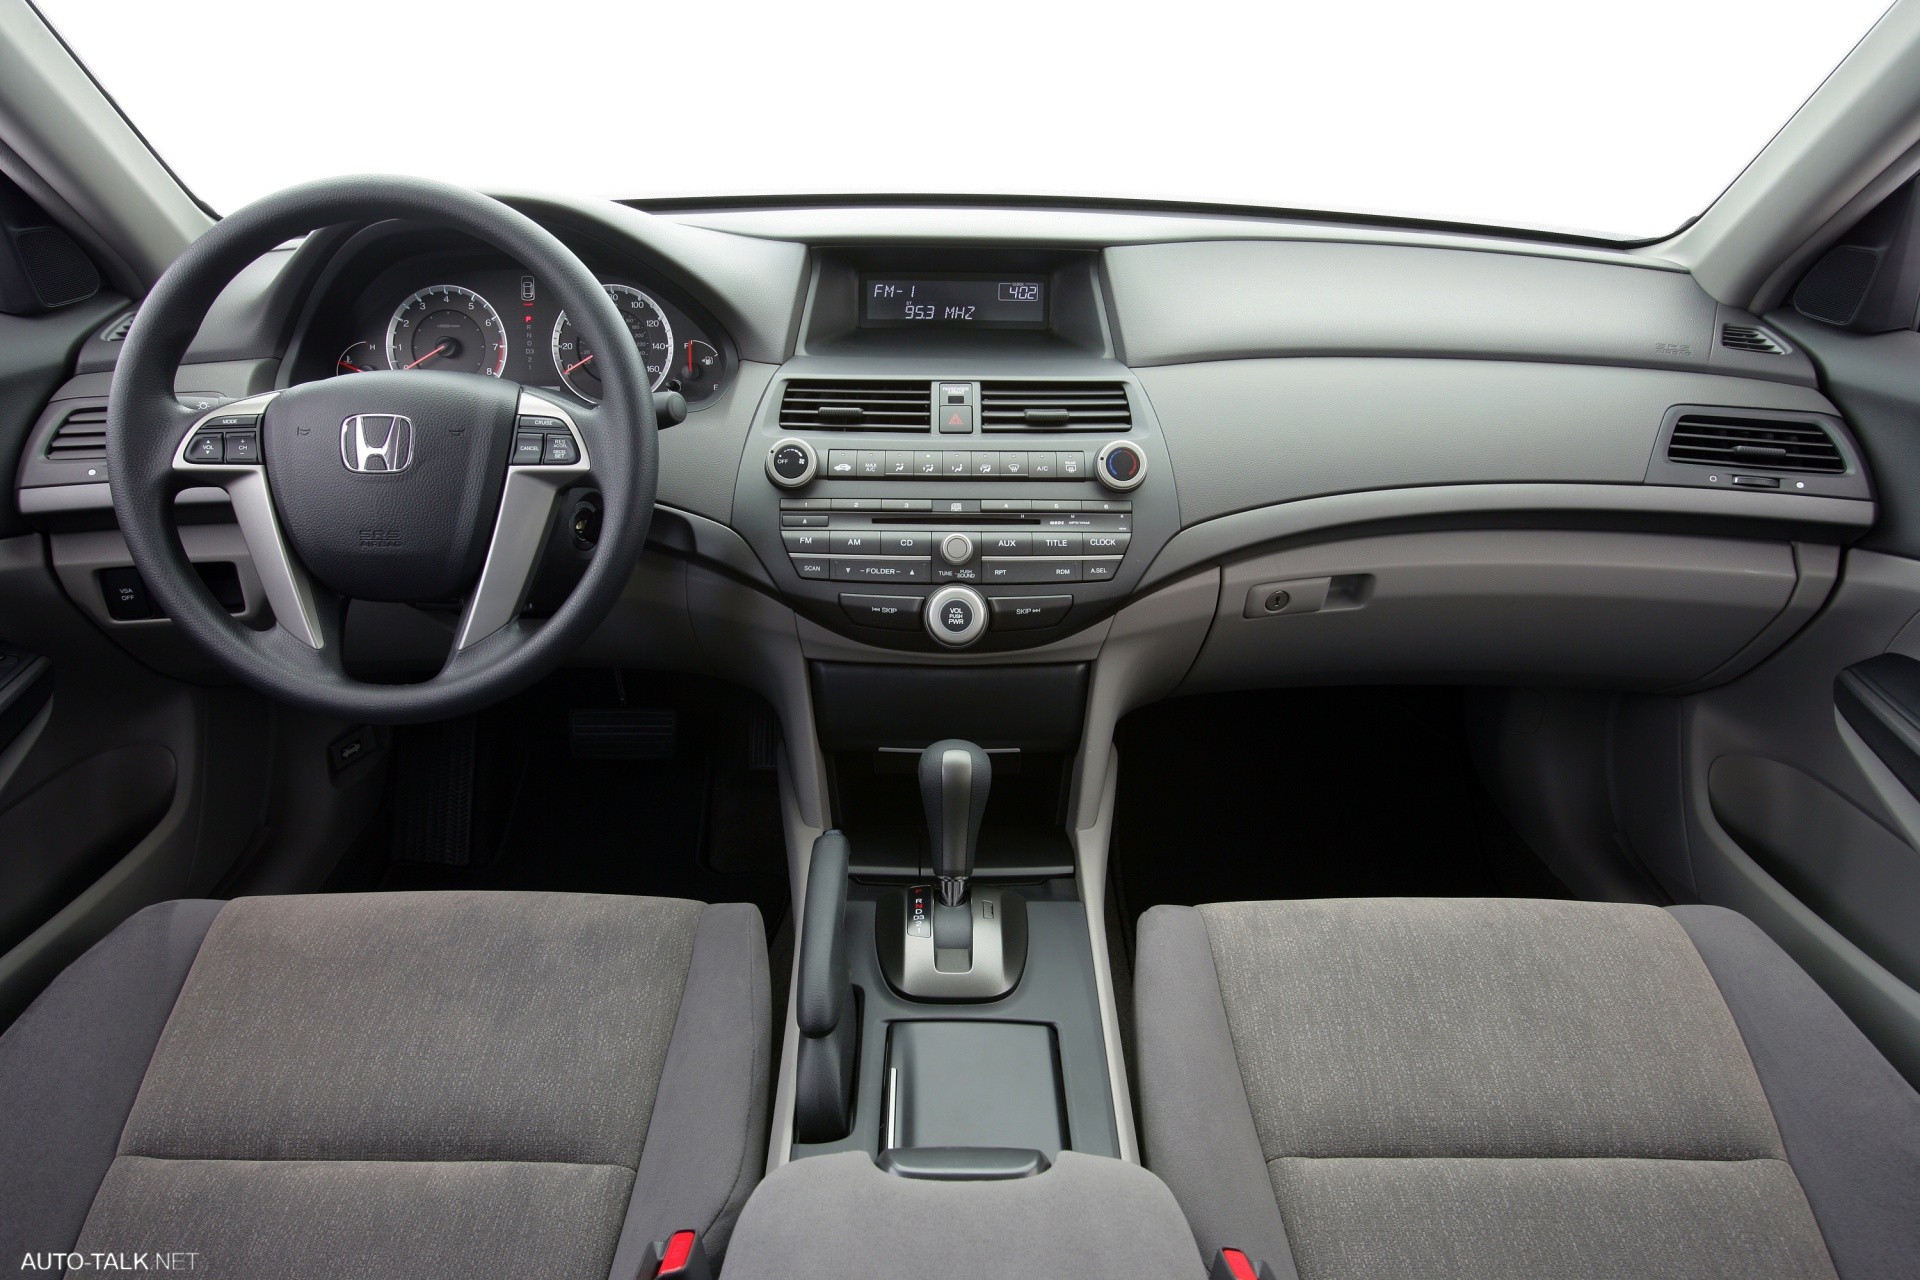 2008 Honda Accord LX-P Sedan